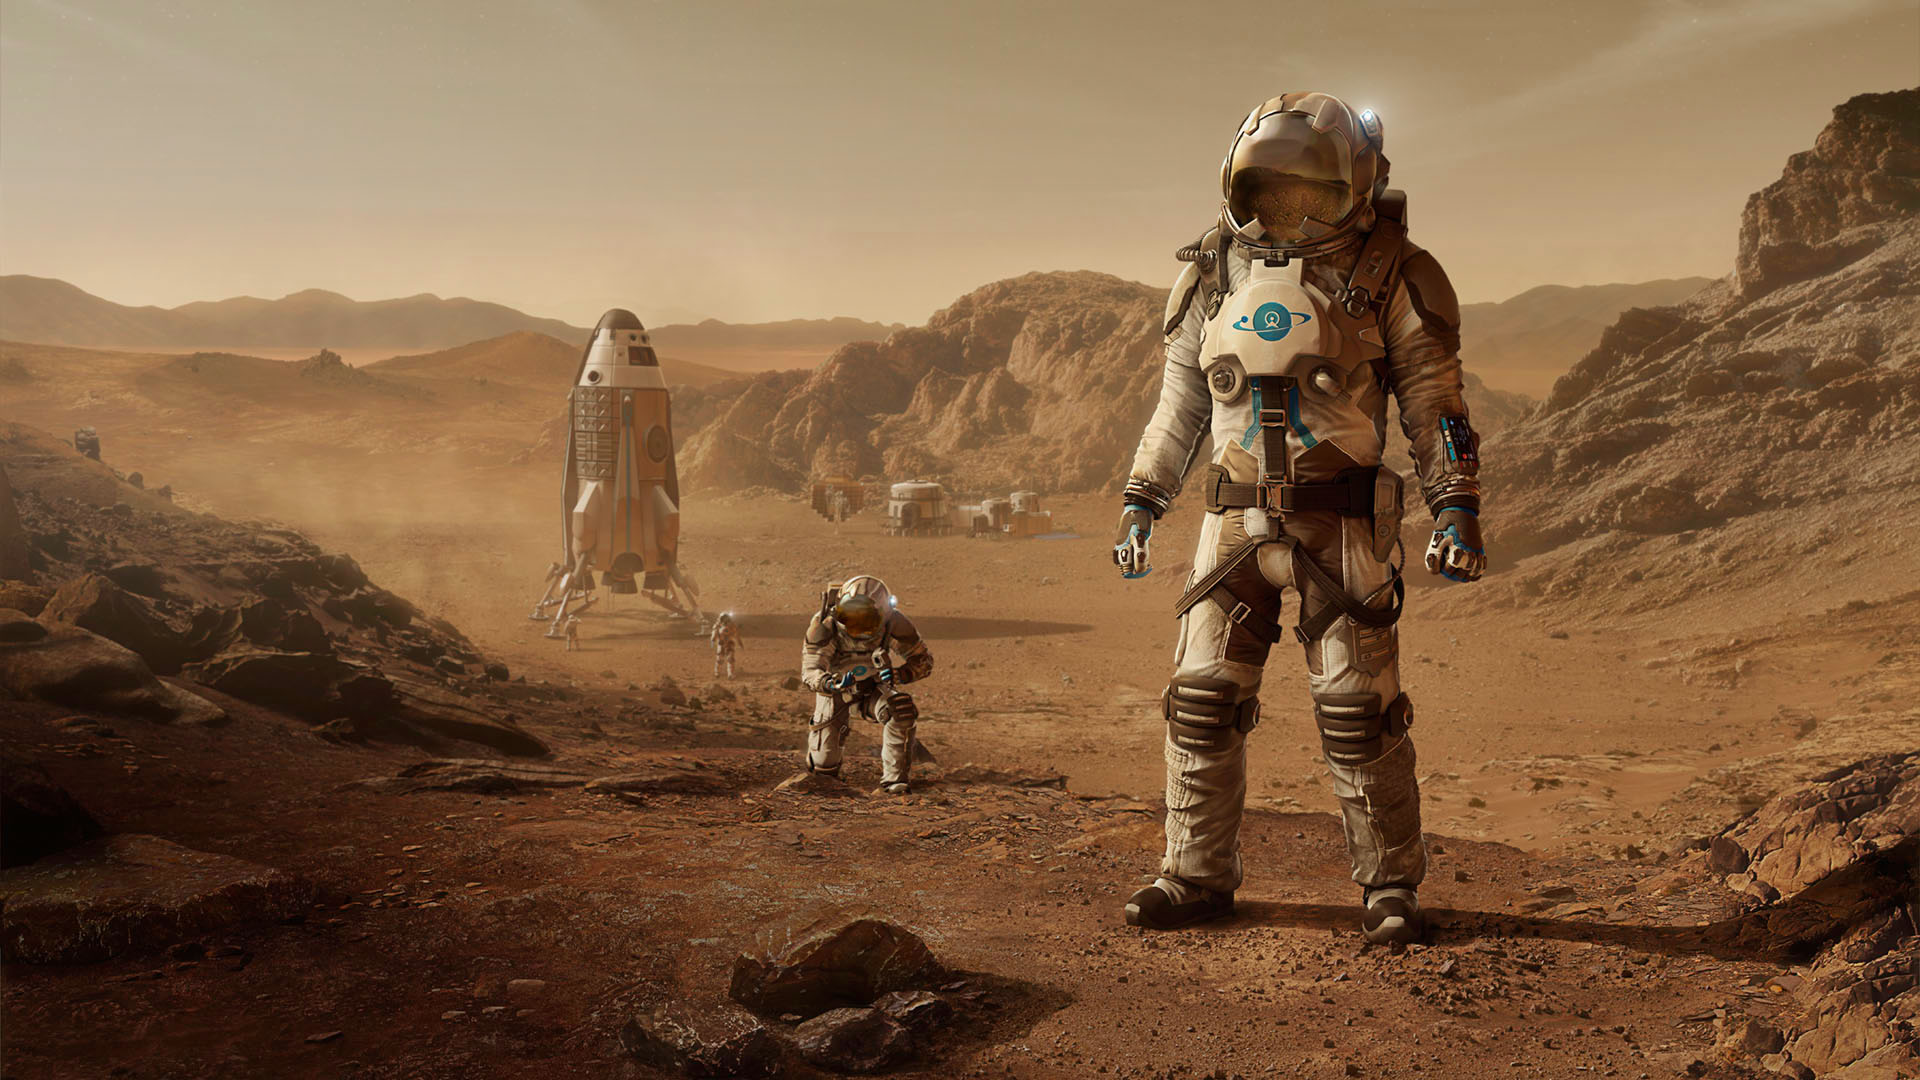 El proyecto ‘Mars One’ entra en bancarrota: ¿Adiós a un sueño?